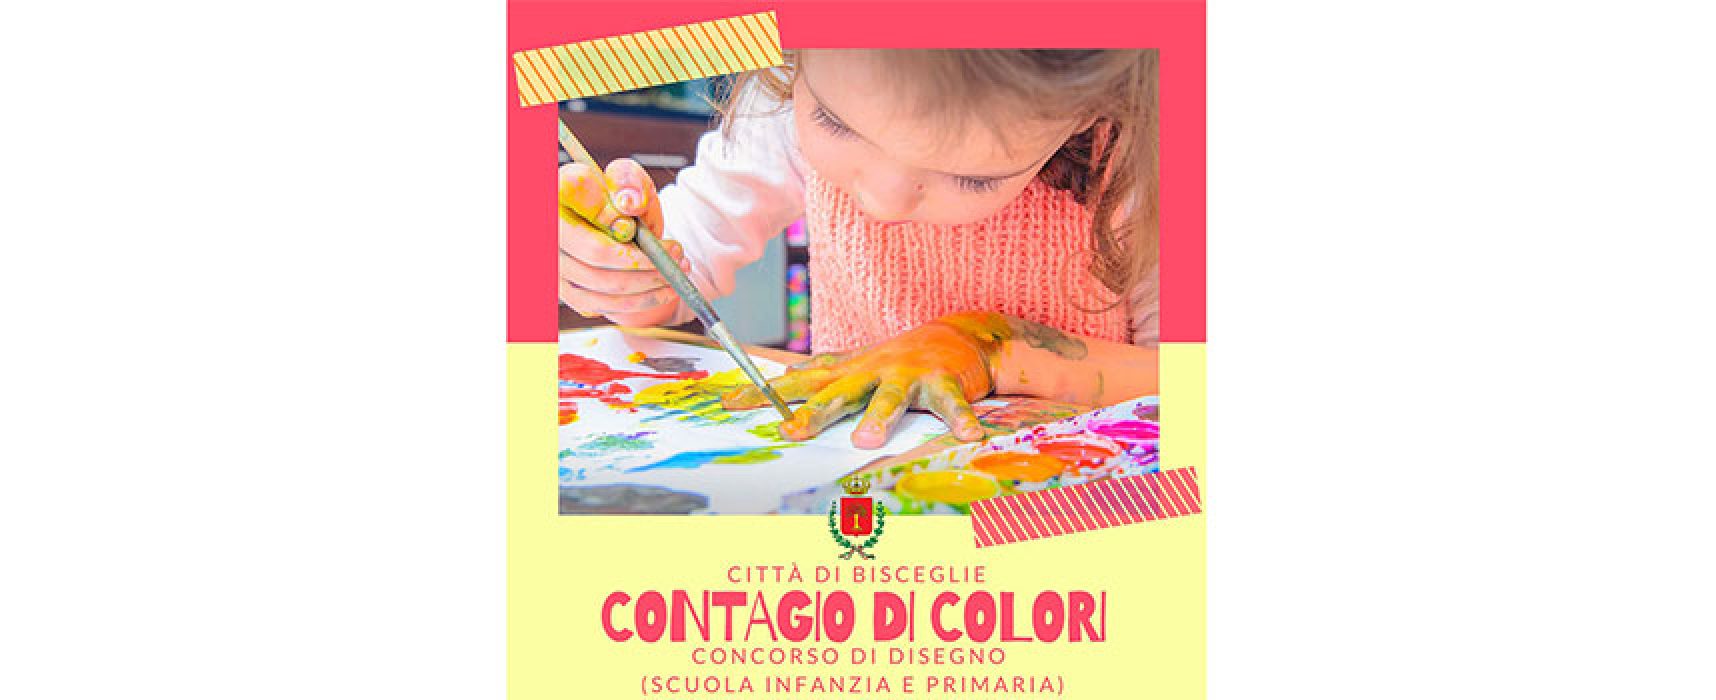 Prorogato al 31 maggio il concorso per bambini “Contagio di colori”